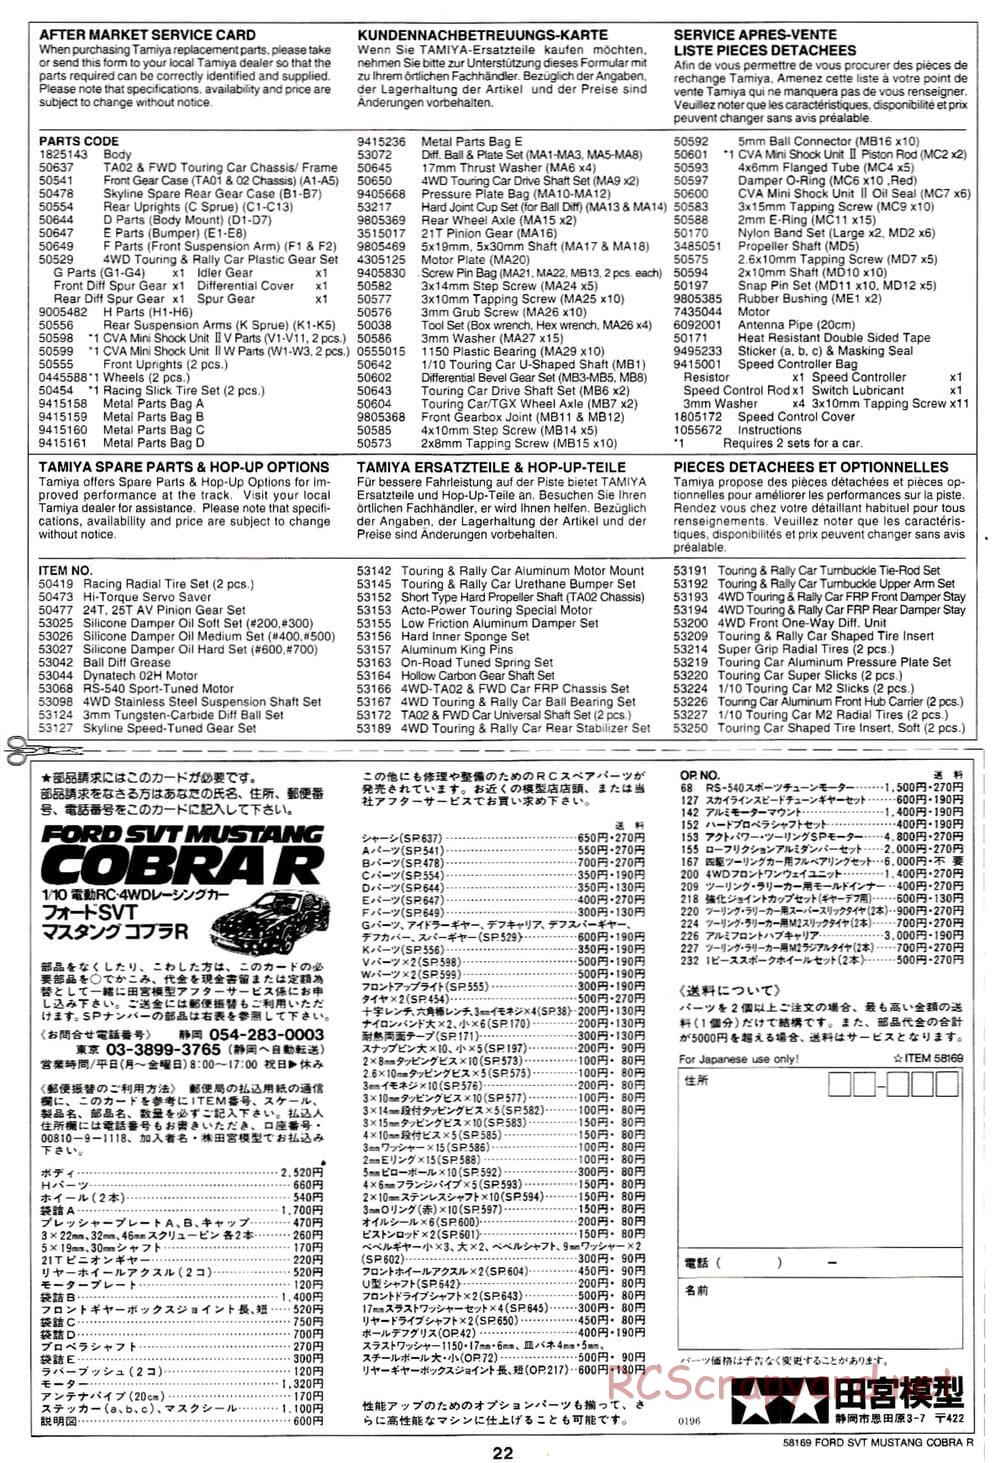 Tamiya - Ford SVT Mustang Cobra-R - TA-02 Chassis - Manual - Page 24